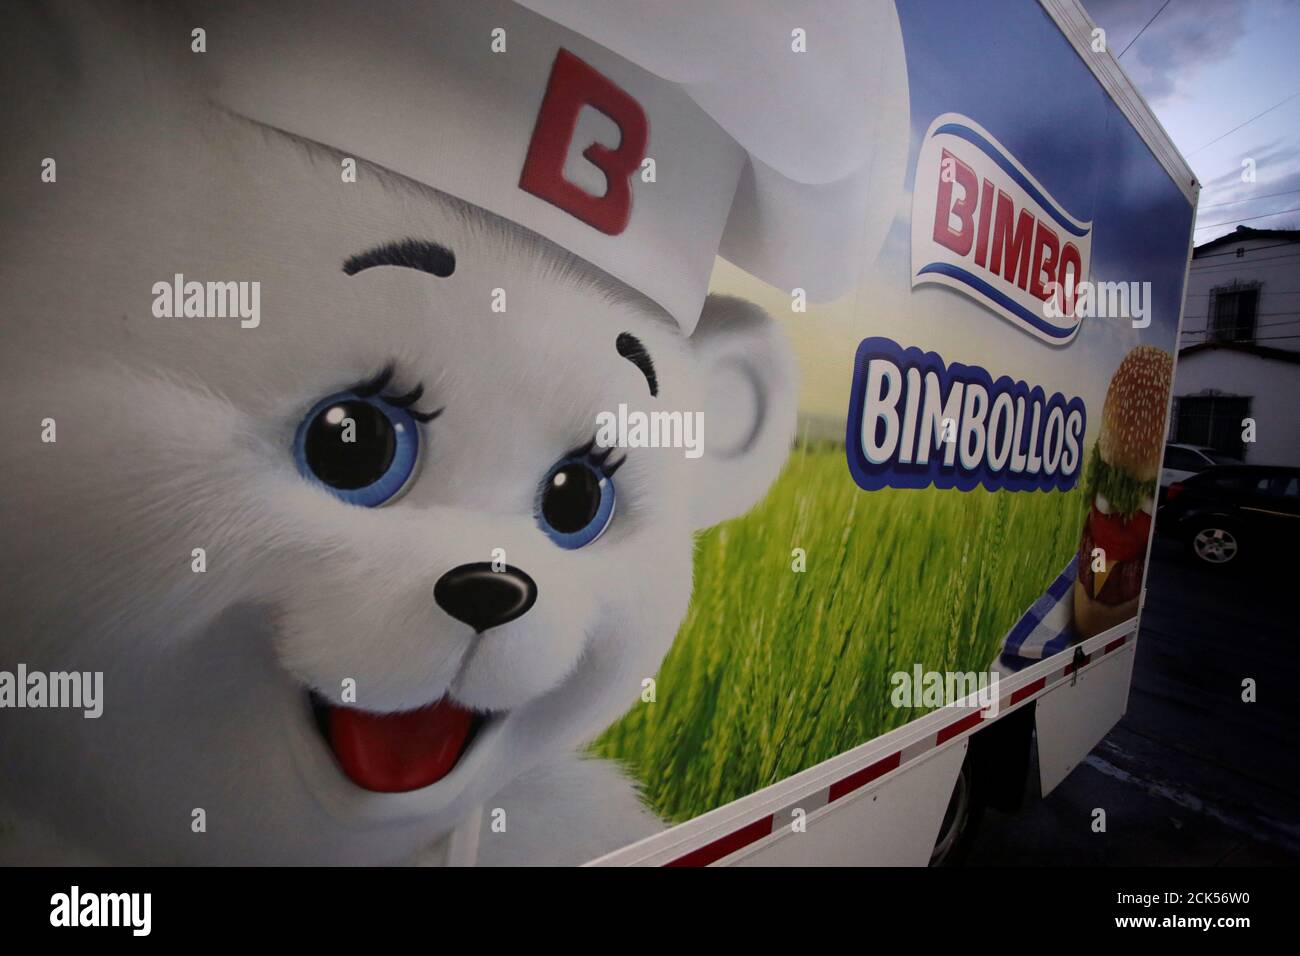 La mascota del panadero mexicano Grupo Bimbo, el Oso Bimbo, está  representada en un camión de entrega en Monterrey, México, el 8 de agosto  de 2018. Foto tomada el 8 de agosto